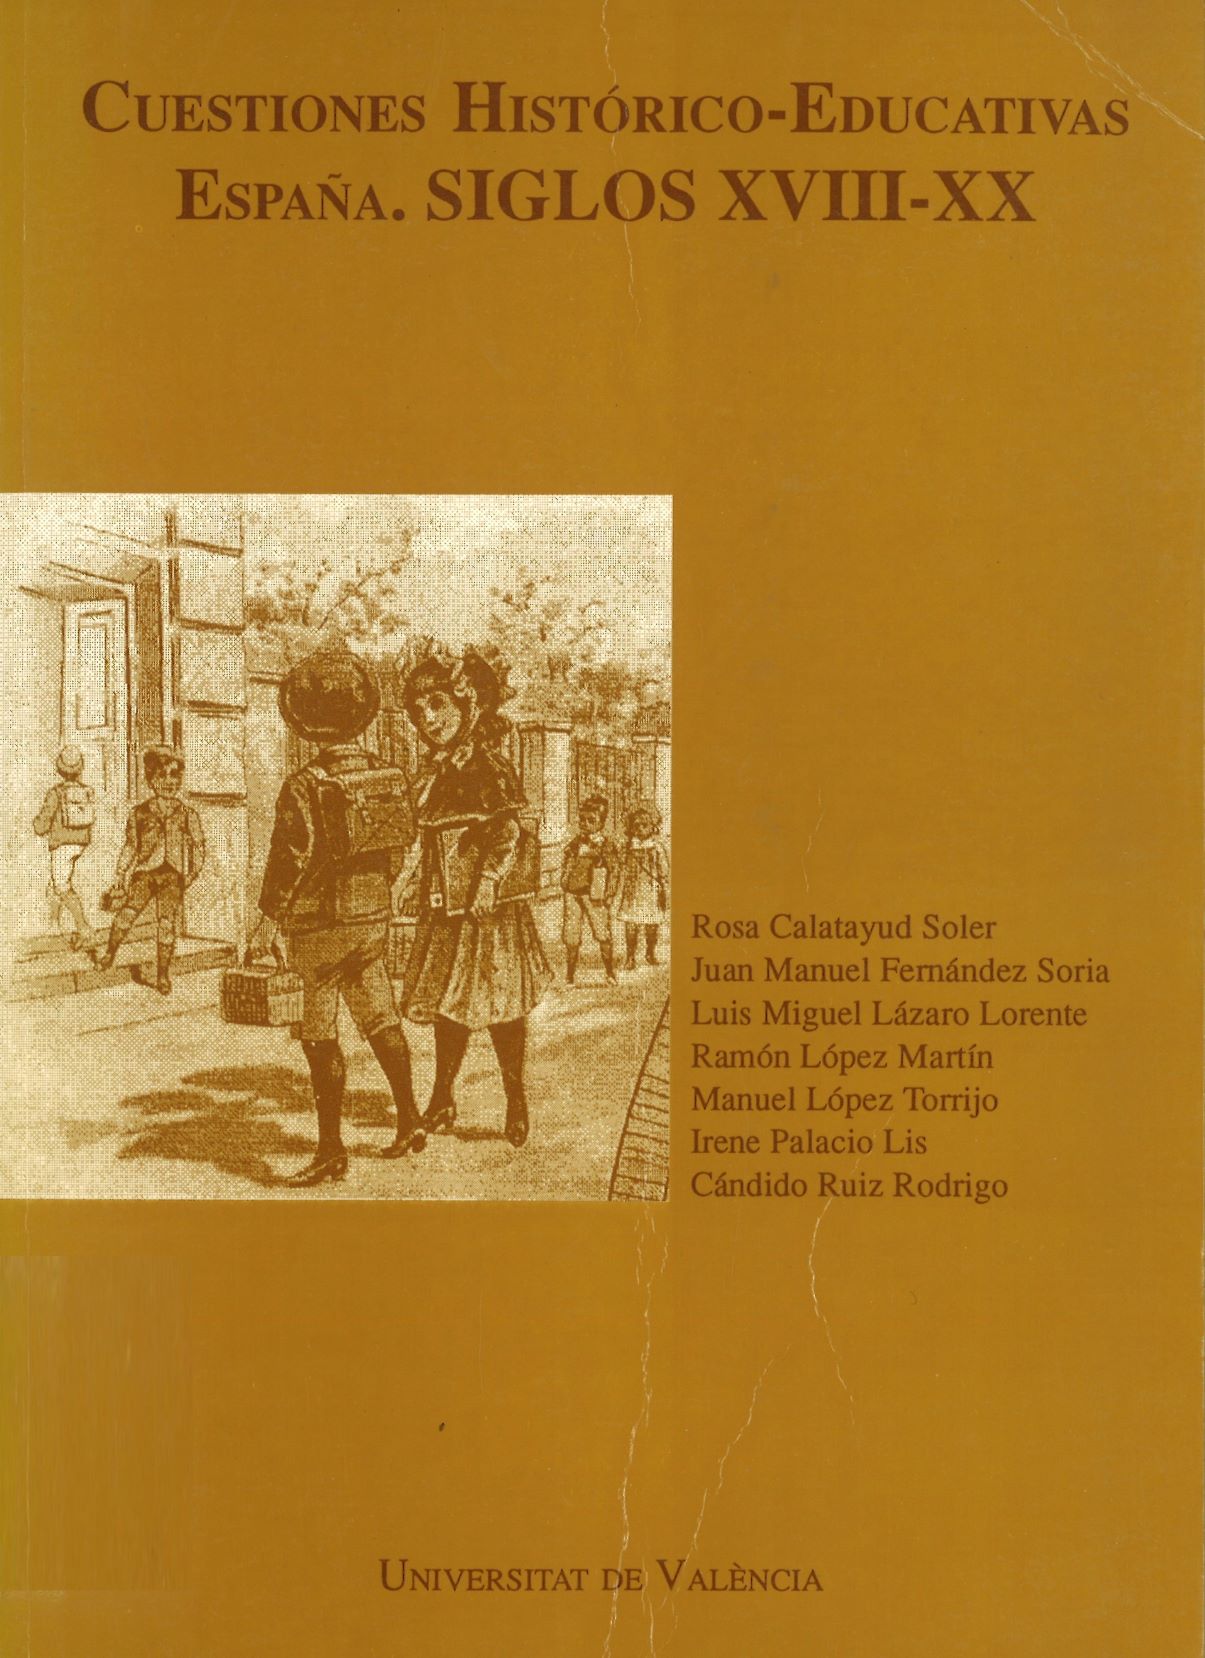 Imagen de portada del libro Cuestiones histórico-educativas